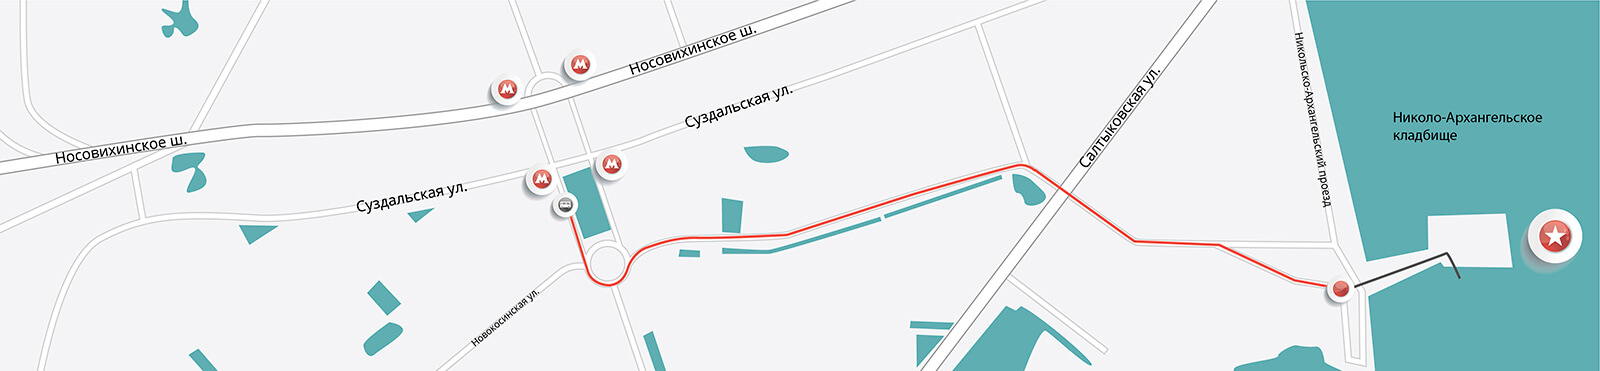 Схема проезда к Николо-Архангельскому кладбищу